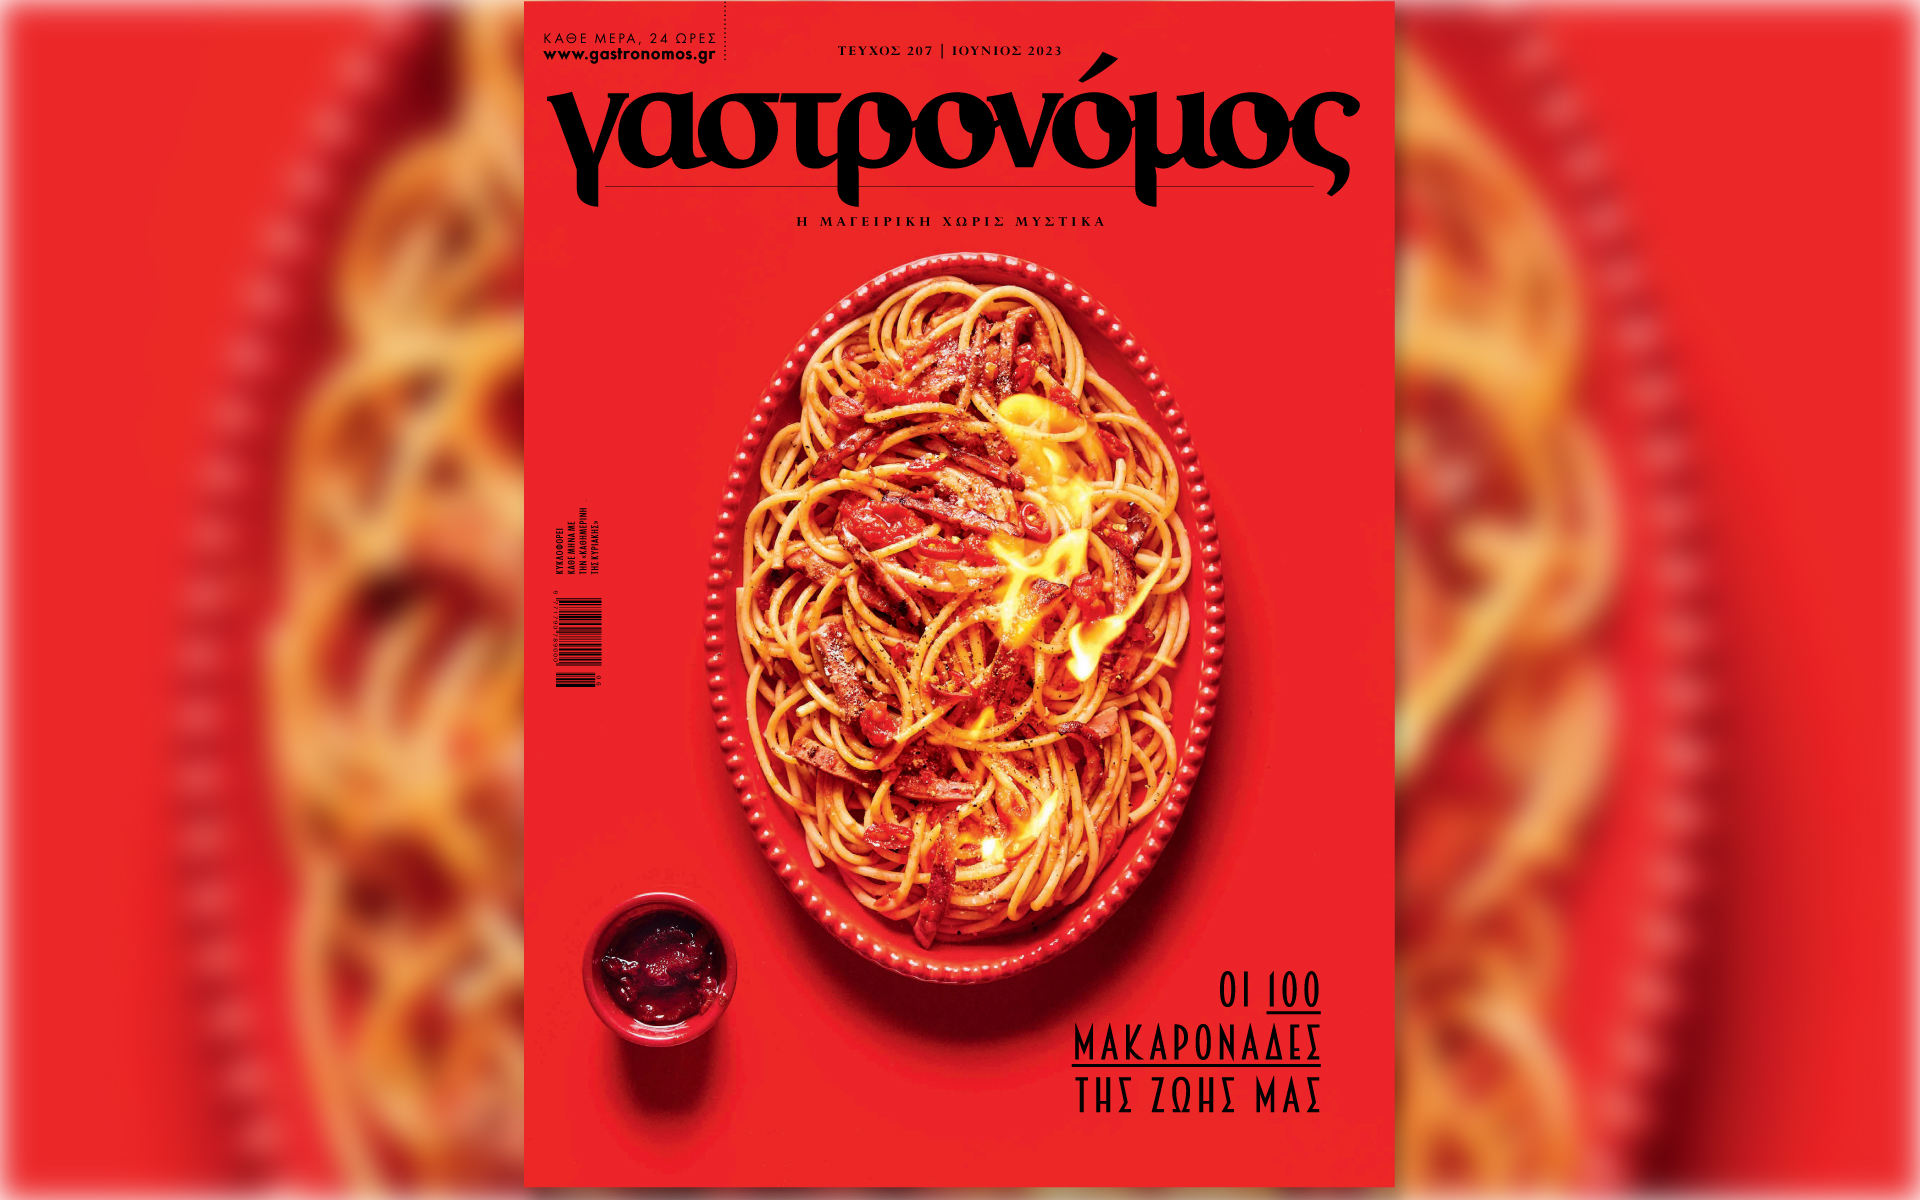 ston-gastronomo-ioynioy-oi-100-makaronades-tis-zois-mas-ayti-tin-kyriaki-me-tin-kathimerini-562456054